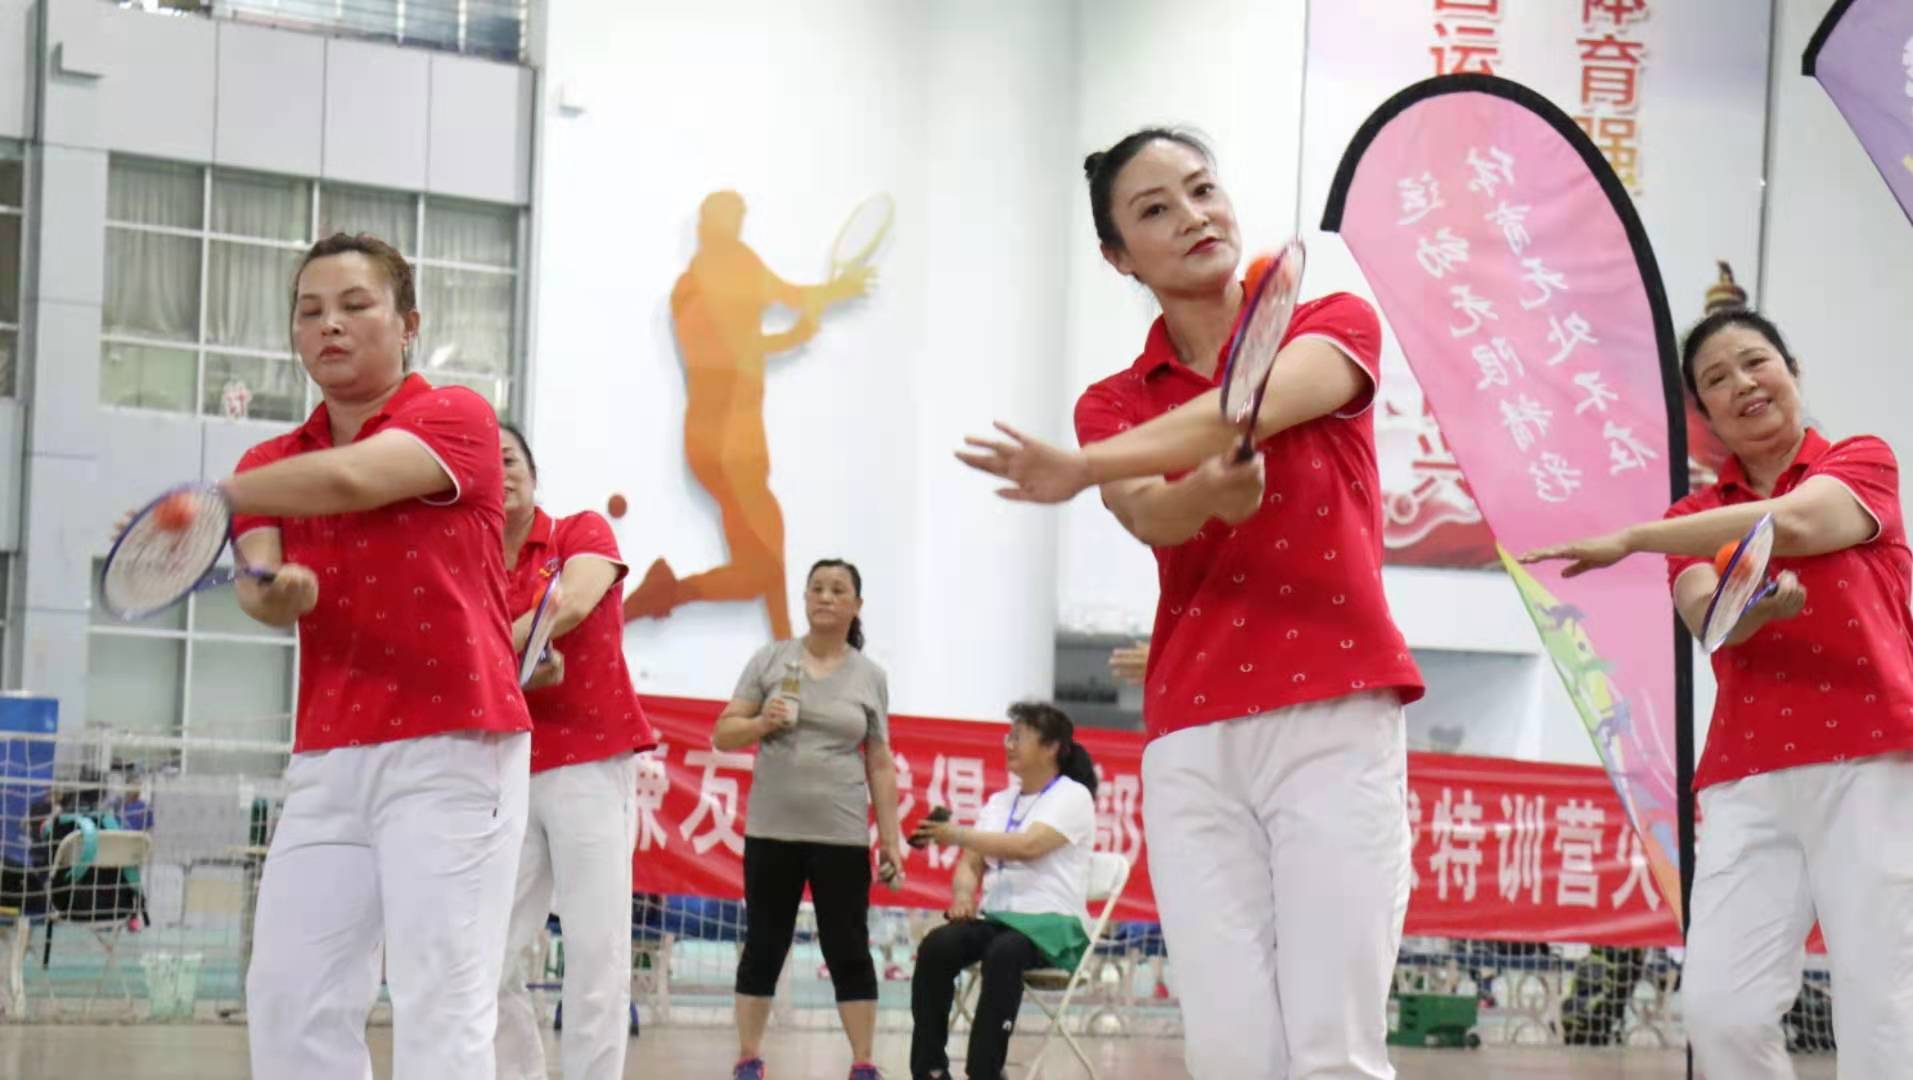 北京柔力球公开赛举行 500余人参加六小项角逐_北京日报APP新闻